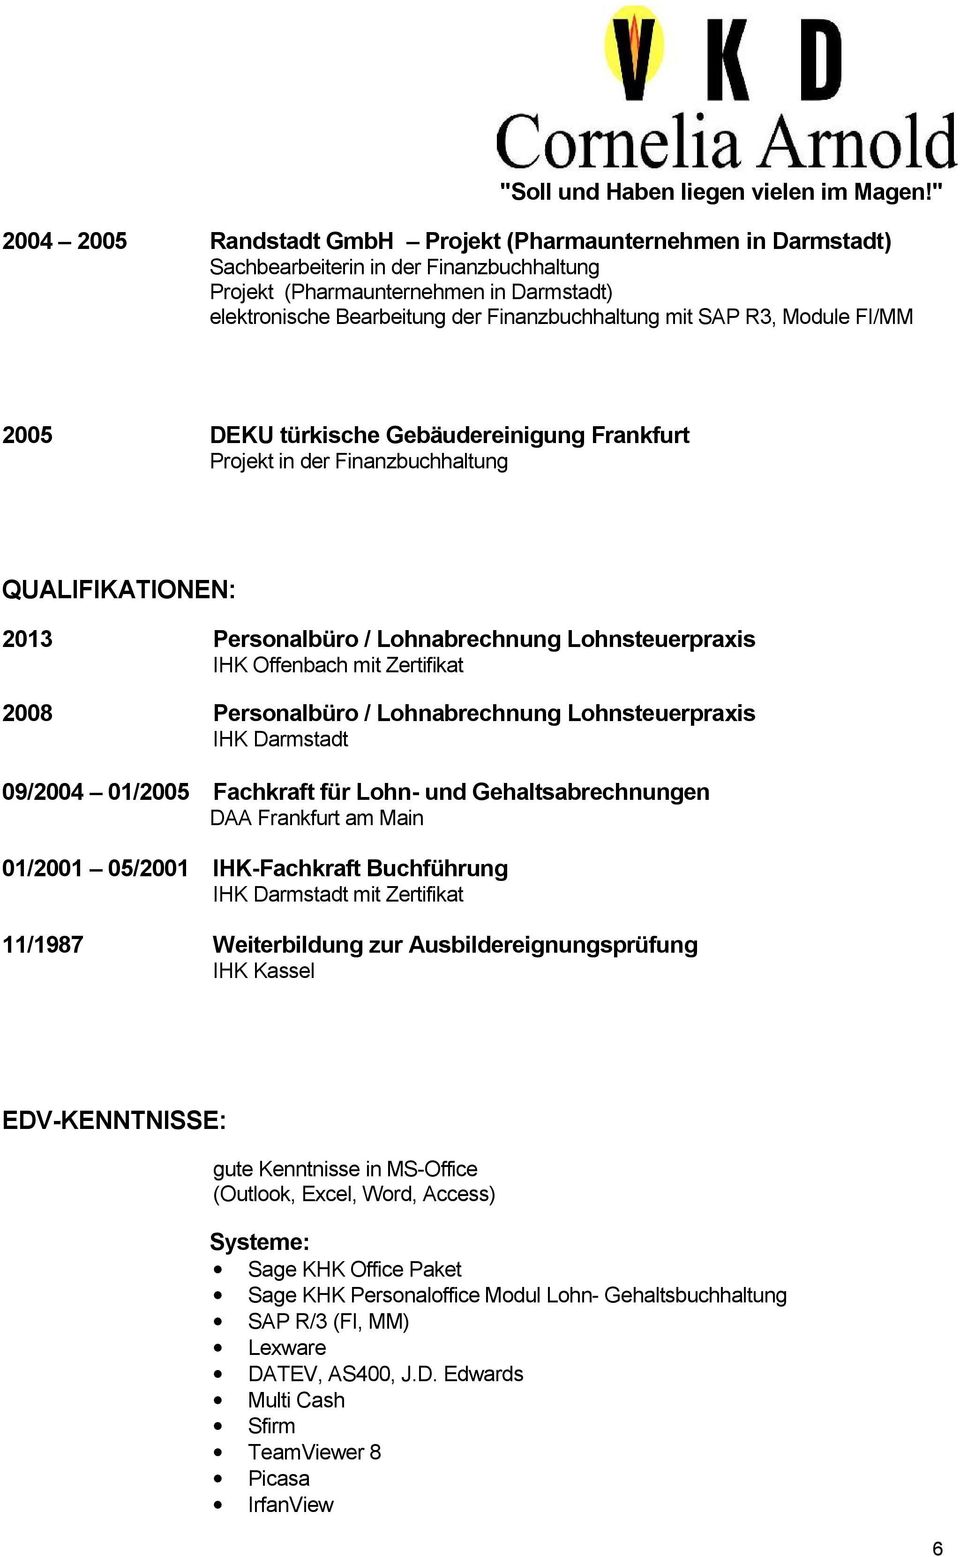 Zertifikat 2008 Personalbüro / Lohnabrechnung Lohnsteuerpraxis IHK Darmstadt 09/2004 01/2005 Fachkraft für Lohn- und Gehaltsabrechnungen DAA Frankfurt am Main 01/2001 05/2001 IHK-Fachkraft